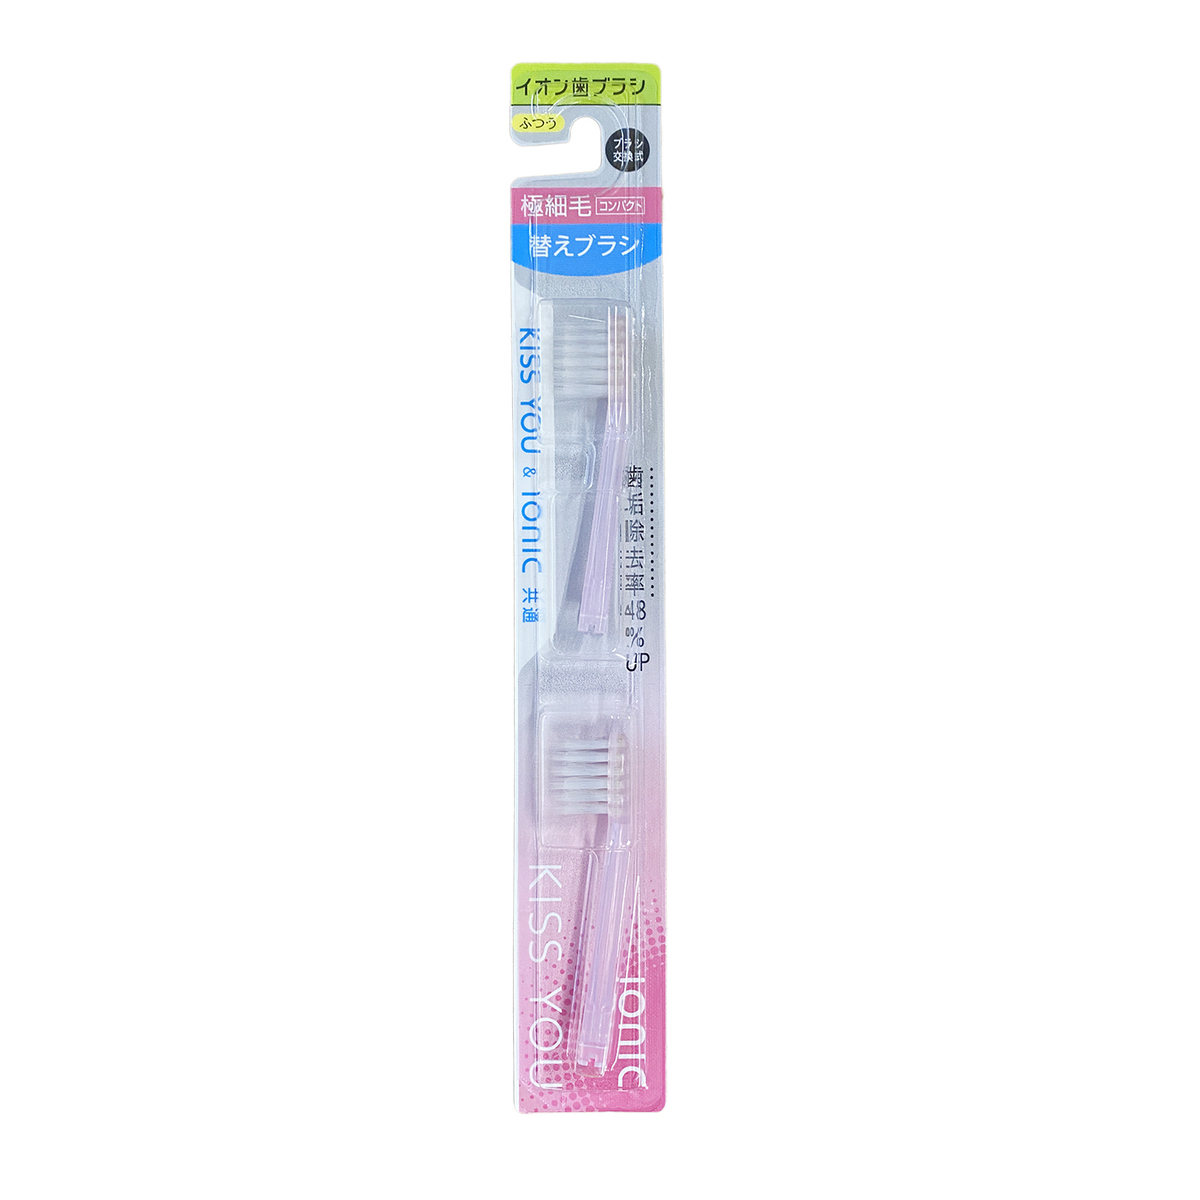 Комплект насадок Hukuba насадки сменные oral b орал би для электрической зубной щетки precision clean cleanmaximiser eb20rb 4 шт